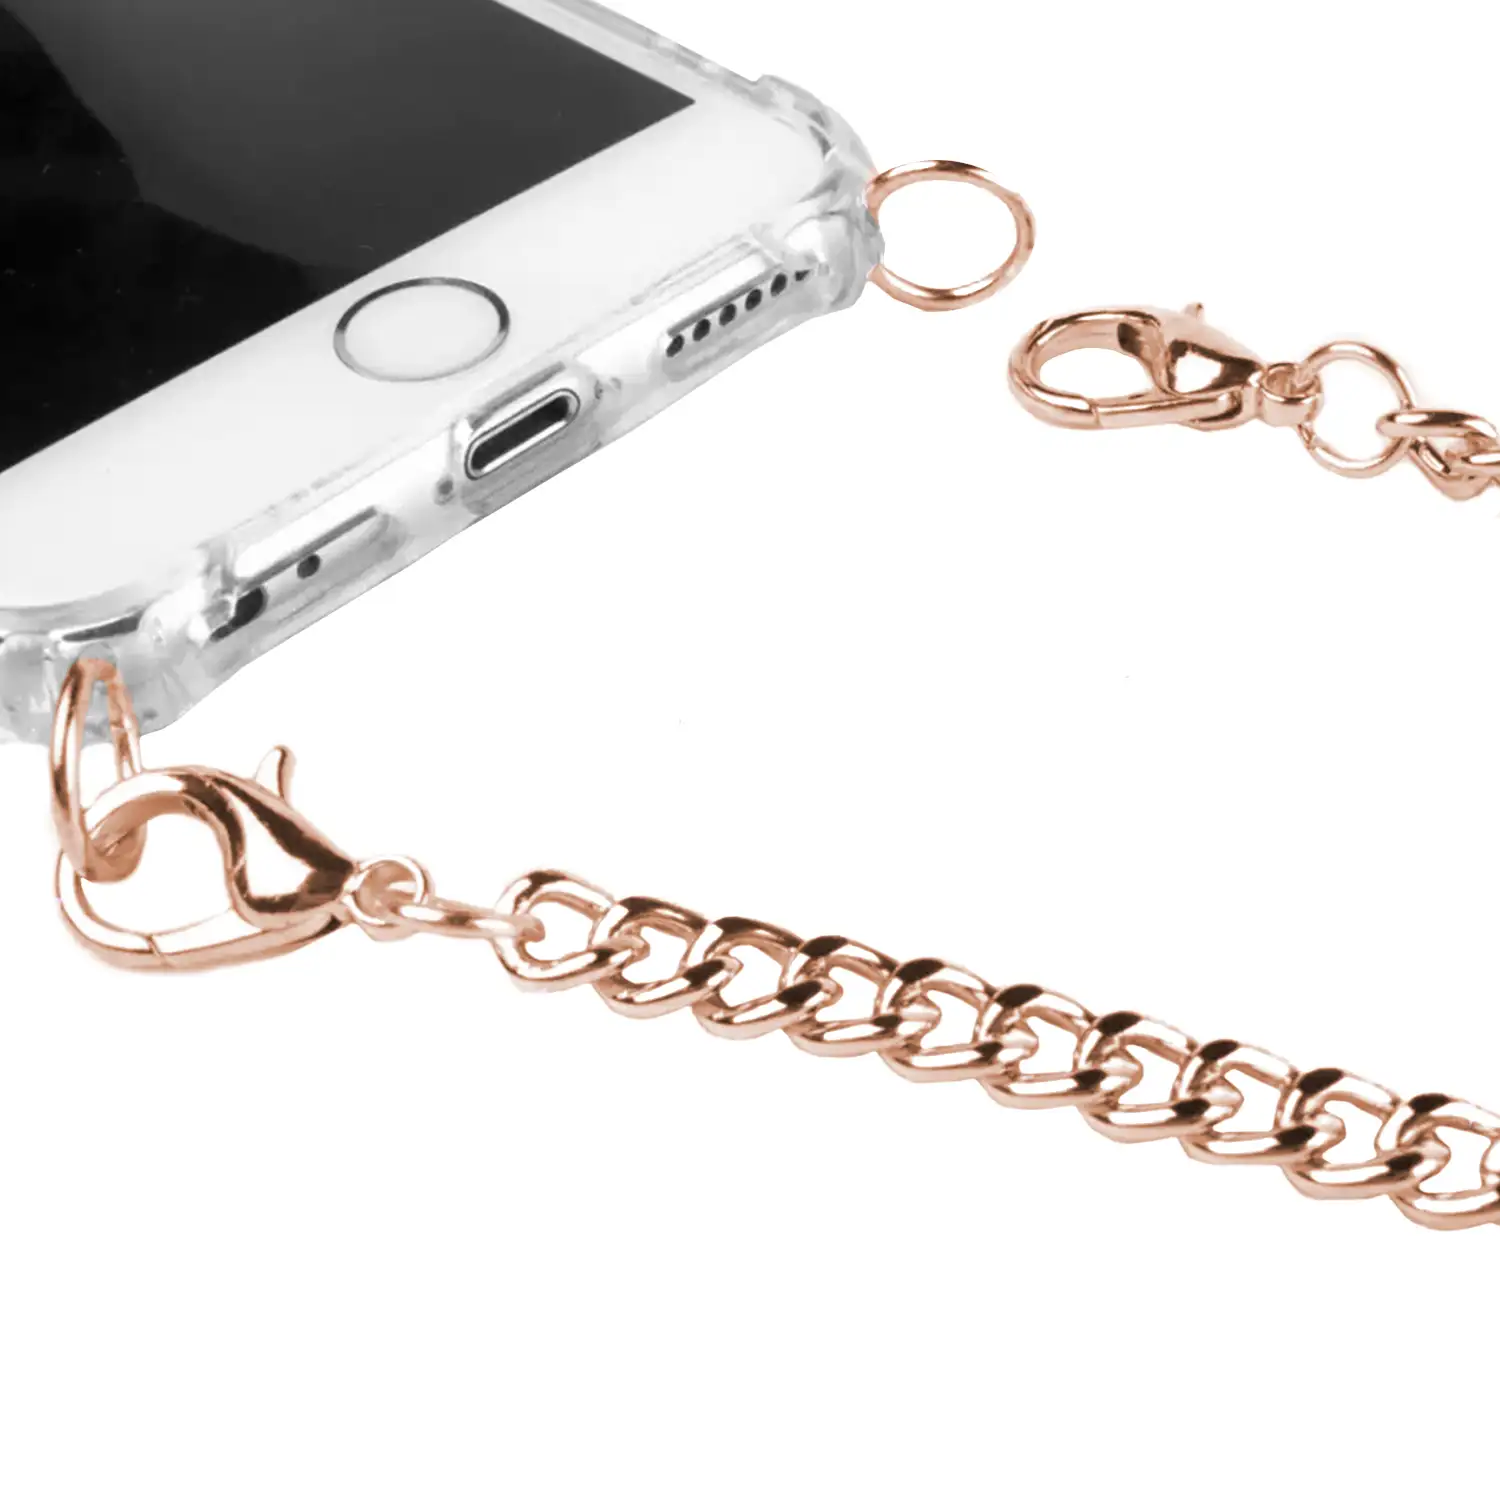 Carcasa transparente iPhone X con colgante cadena metálica. Accesorio de moda, ajuste perfecto y máxima protección